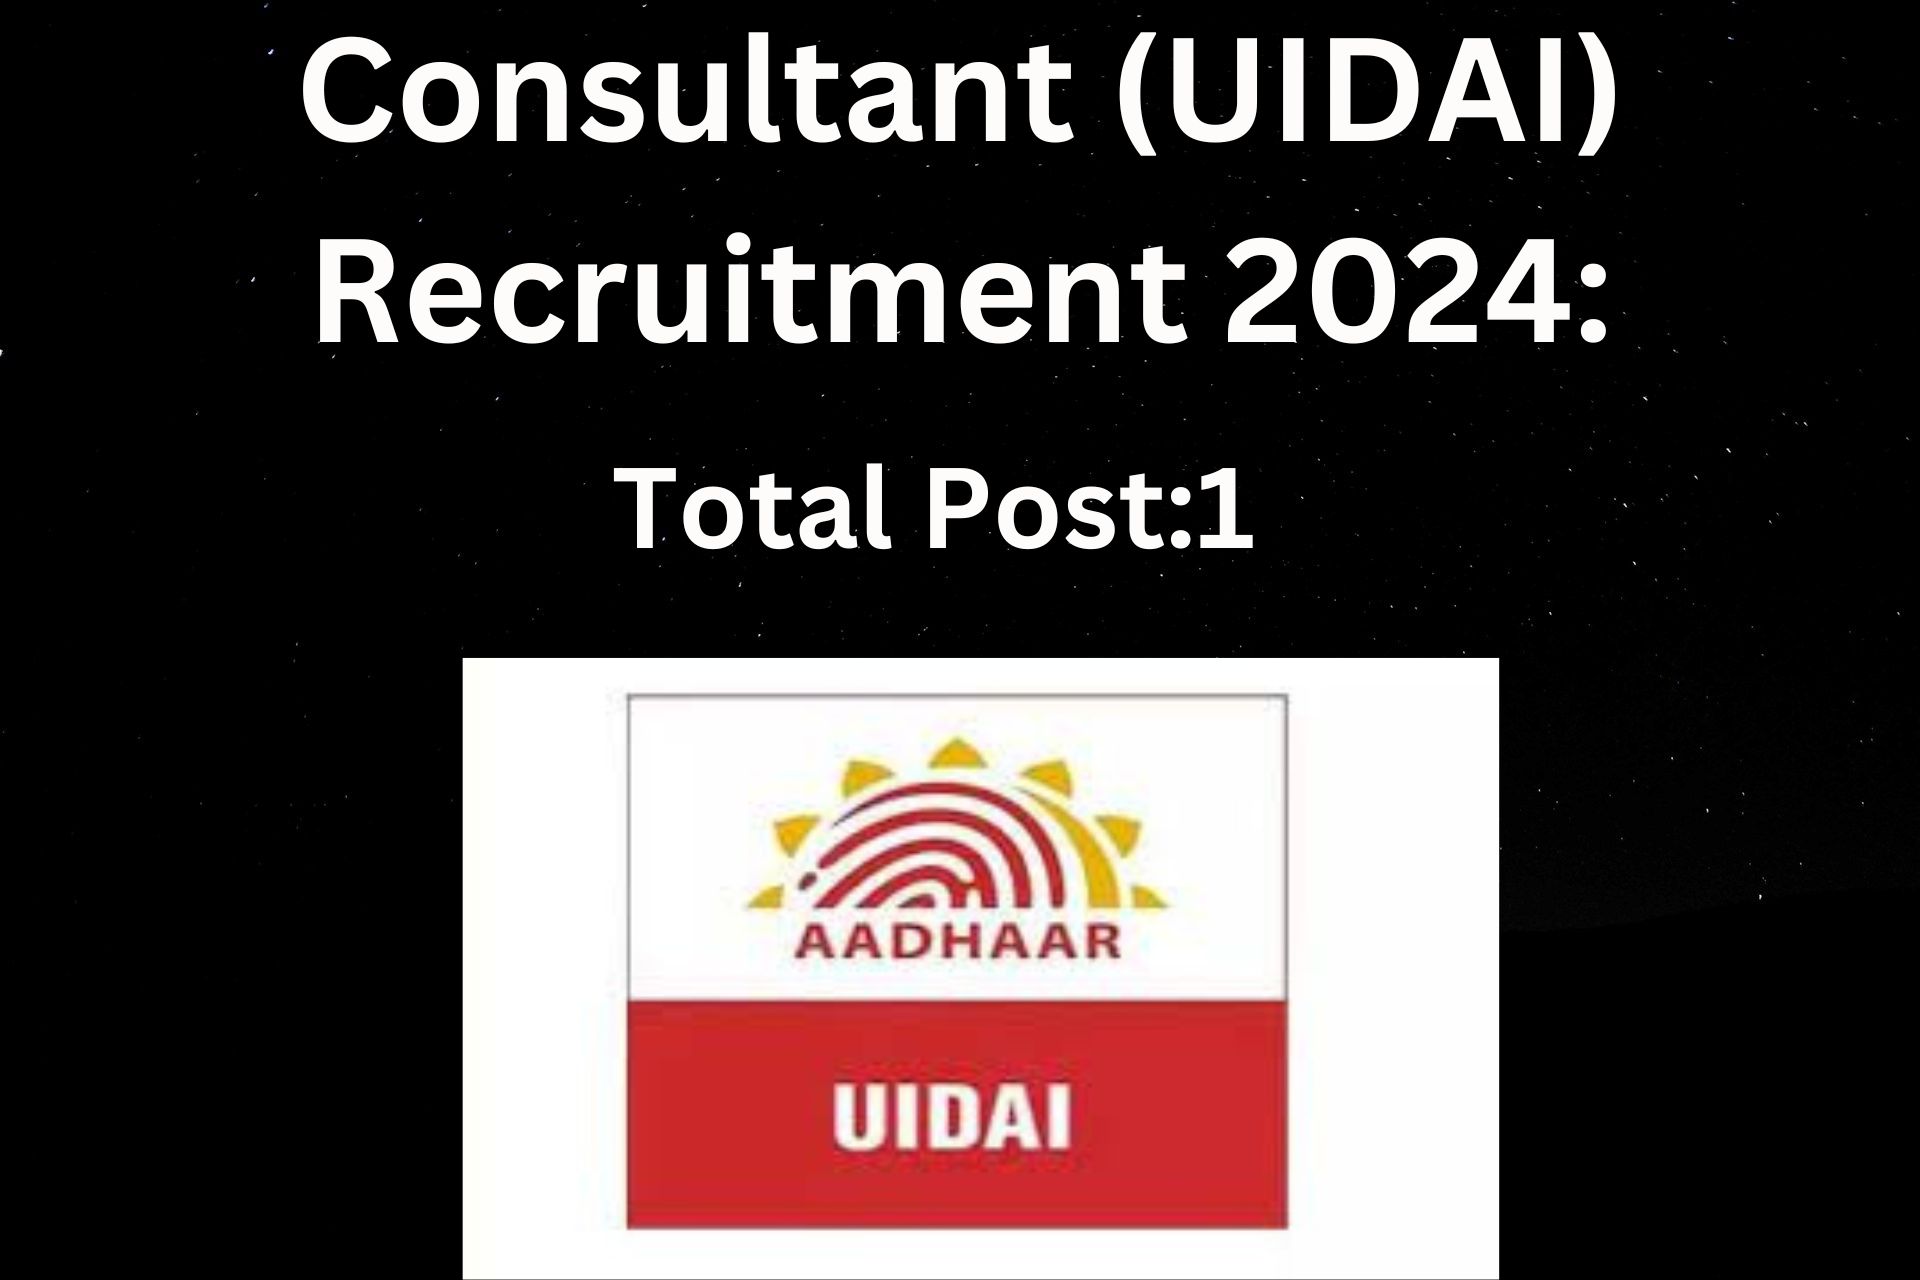 UIDAI recruitment 2024 for Consultant in New Delhi